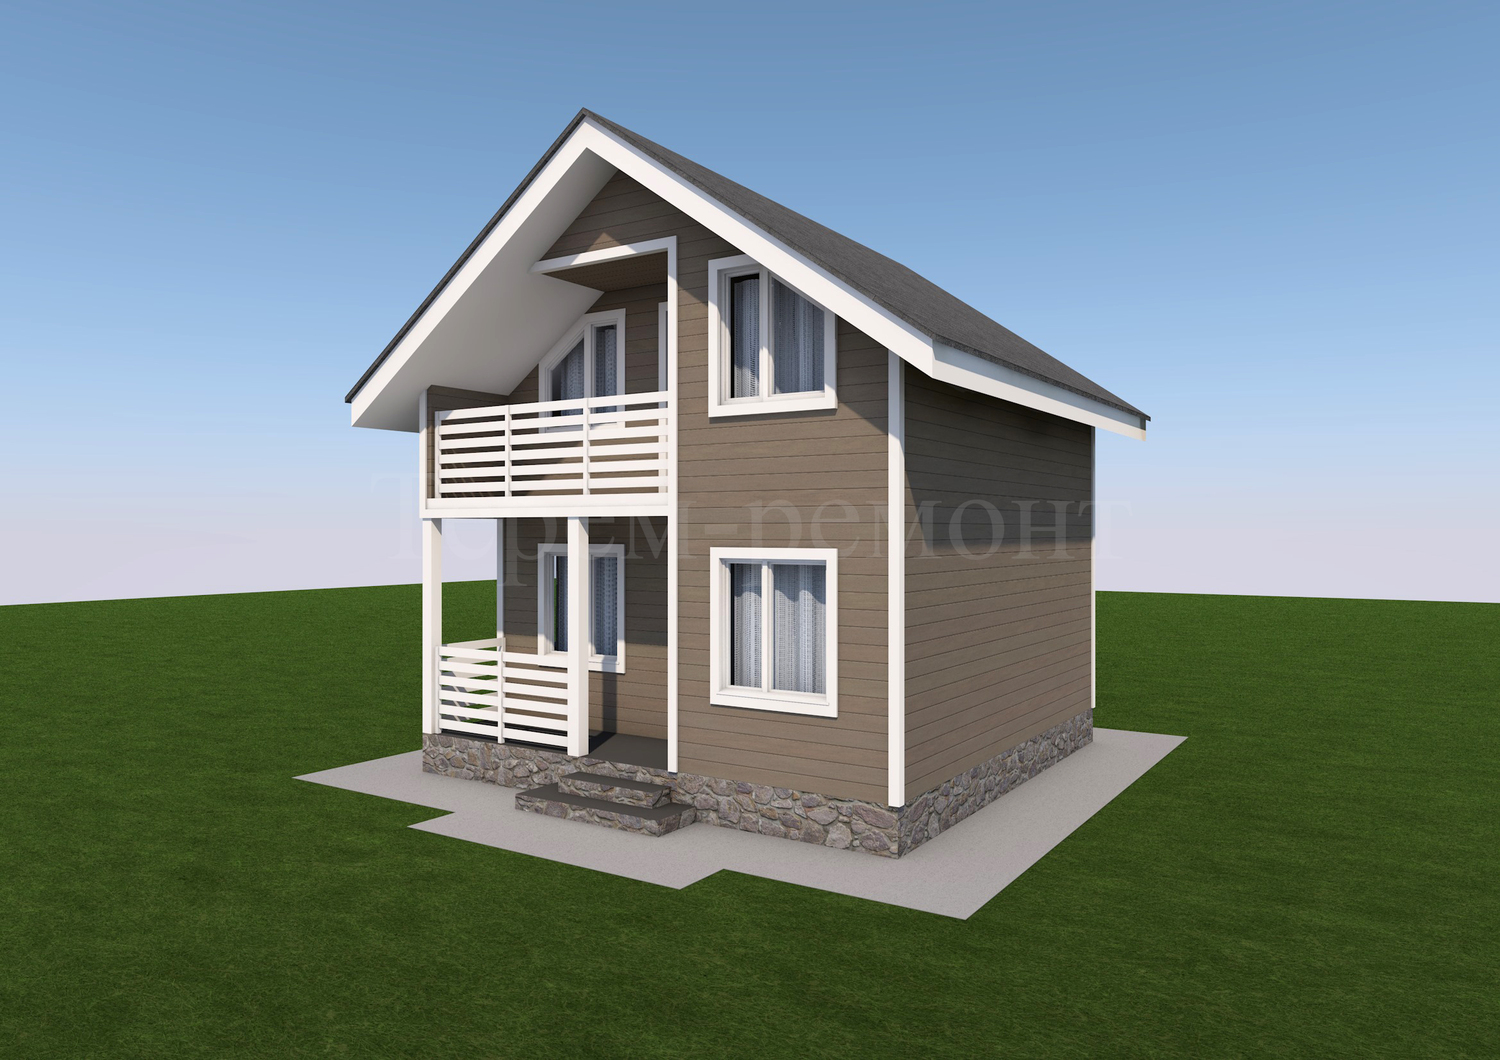 Проект дома Д60-Б2, каркасный дом 6х6, 59.55 м2, стоимость 1619 760 руб. тел. +79112291016 